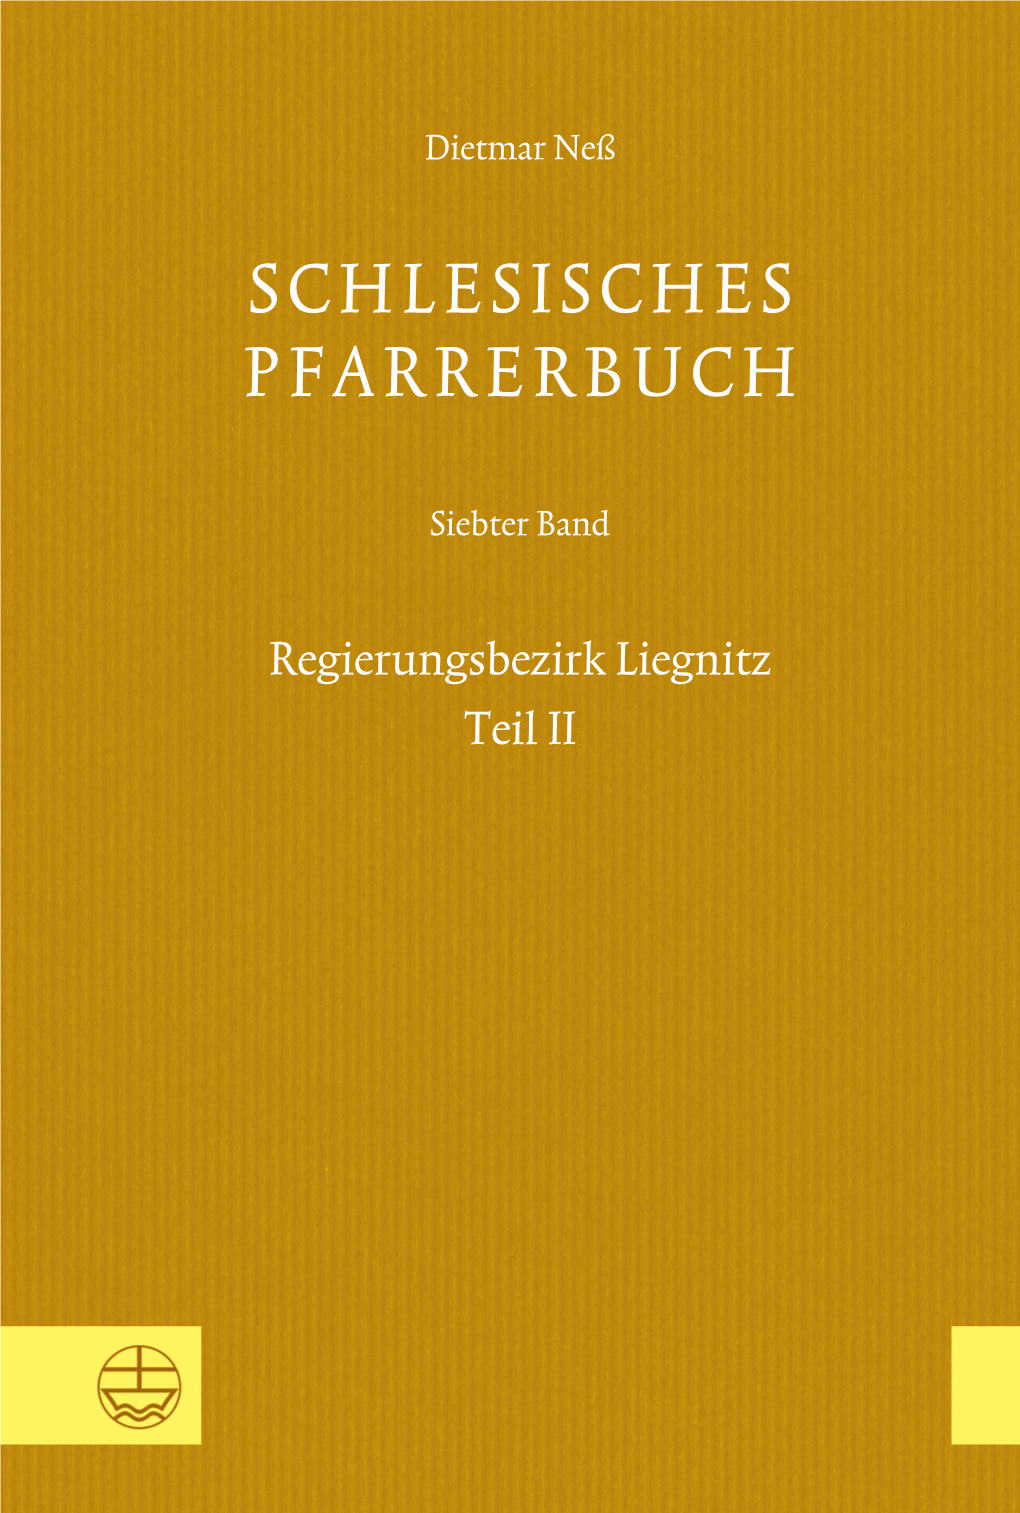 Schlesisches Pfarrerbuch. Siebter Band: Regierungsbezirk Liegnitz, Teil II